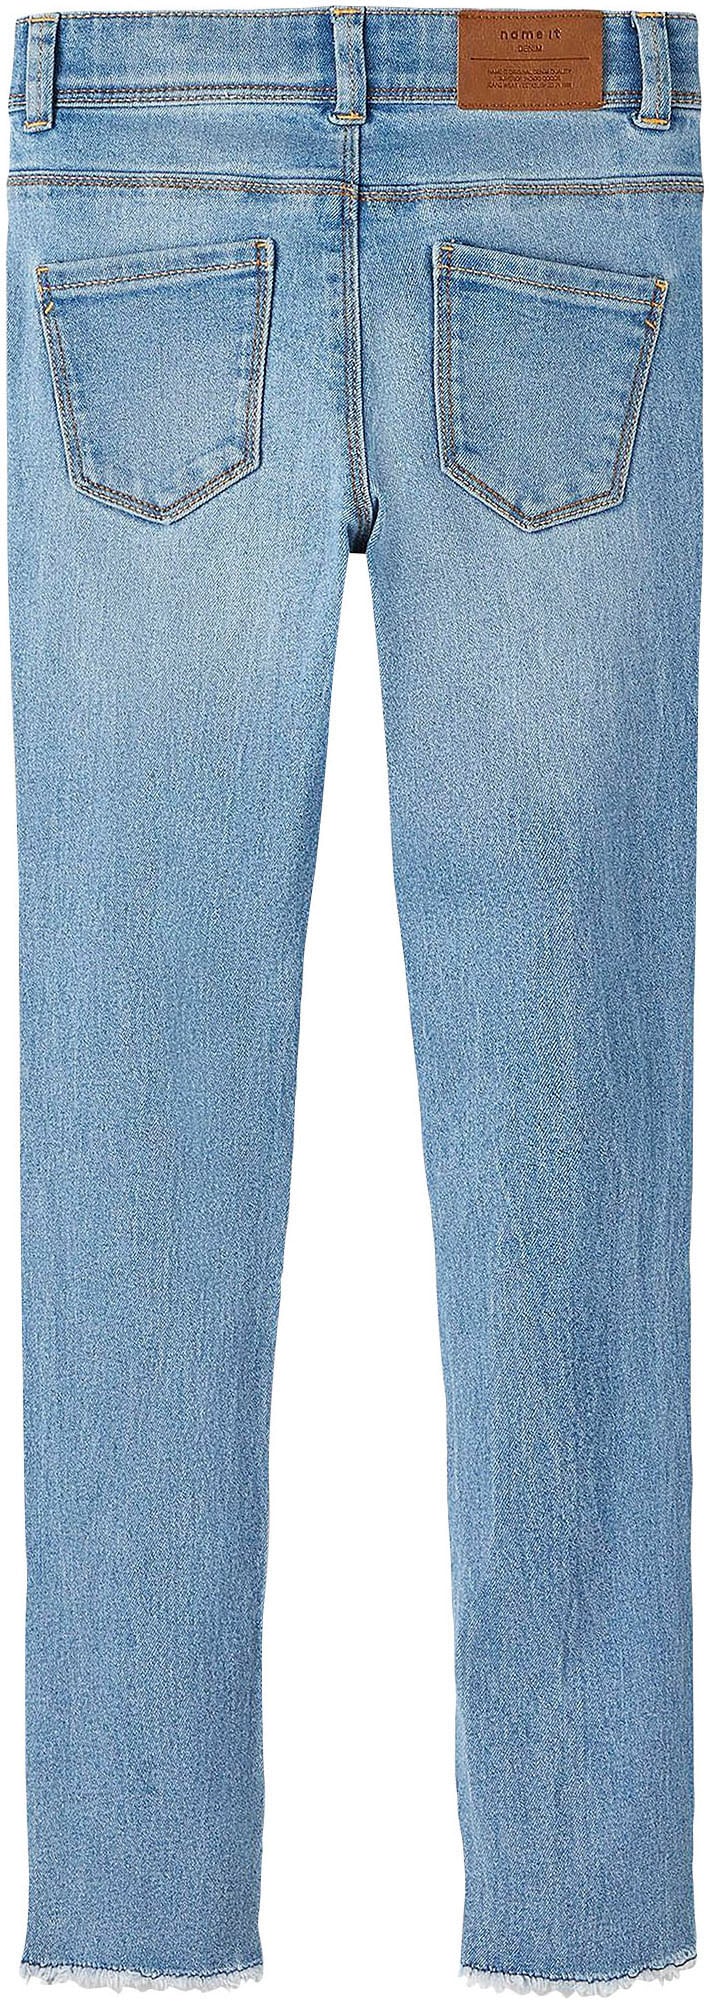 SKINNY Skinny-fit-Jeans Name 1191-IO »NKFPOLLY JEANS kaufen It online NOOS«, Used-Optik